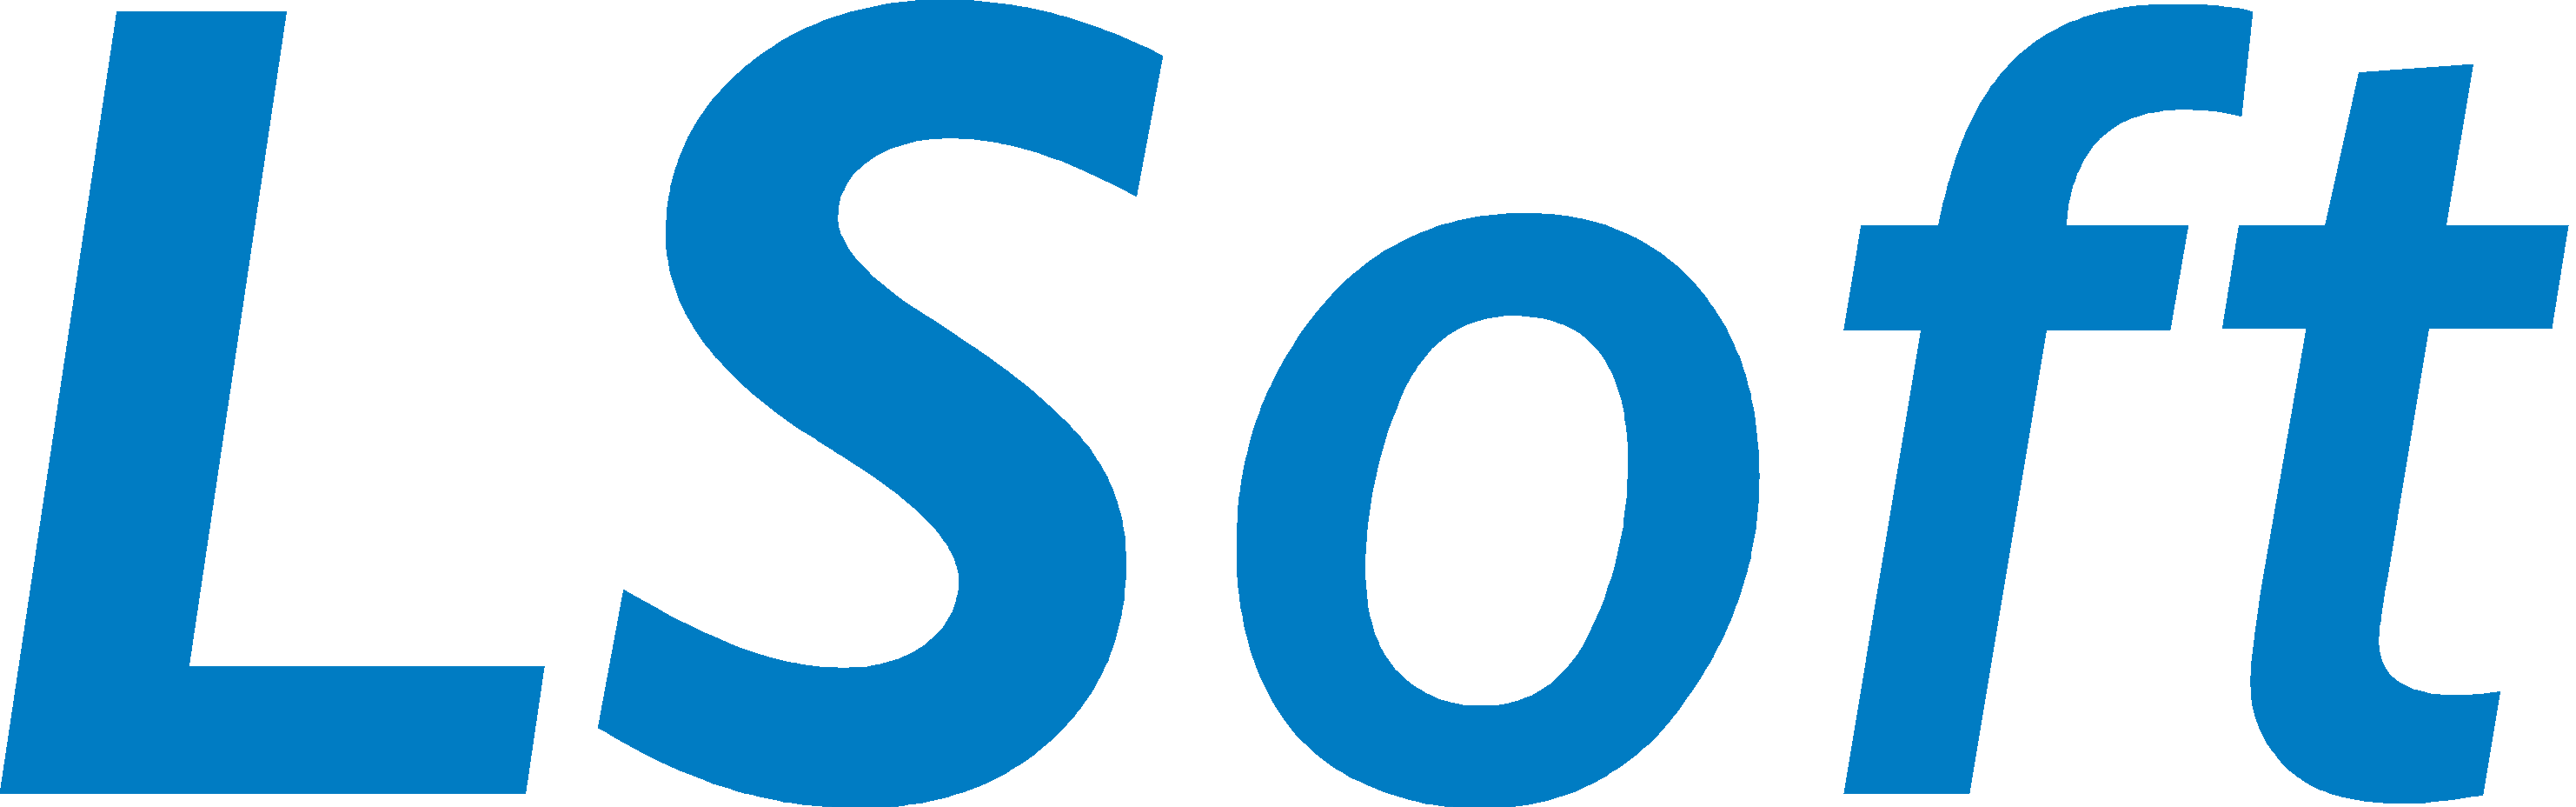 LSoft Sistemas - Softwares de Gestão